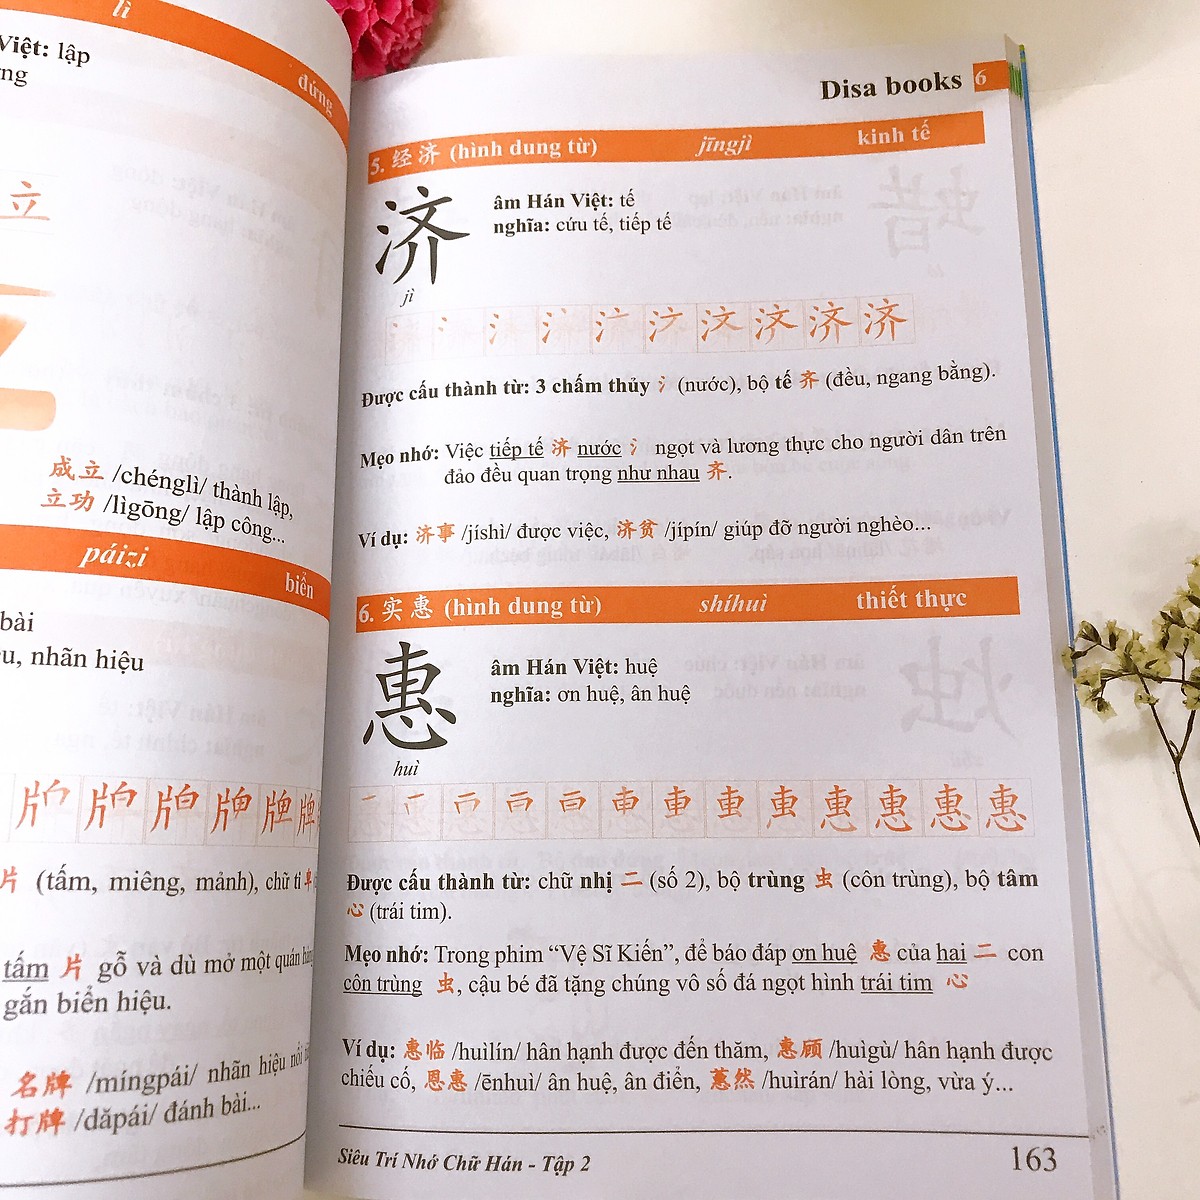 Sách - Combo 3: Học viết 1000 chữ Hán từ con số 0 + Siêu trí nhớ chữ Hán Tập 01 + 5000 từ vựng tiếng Trung thông dụng nhất + DVD Tài liệu